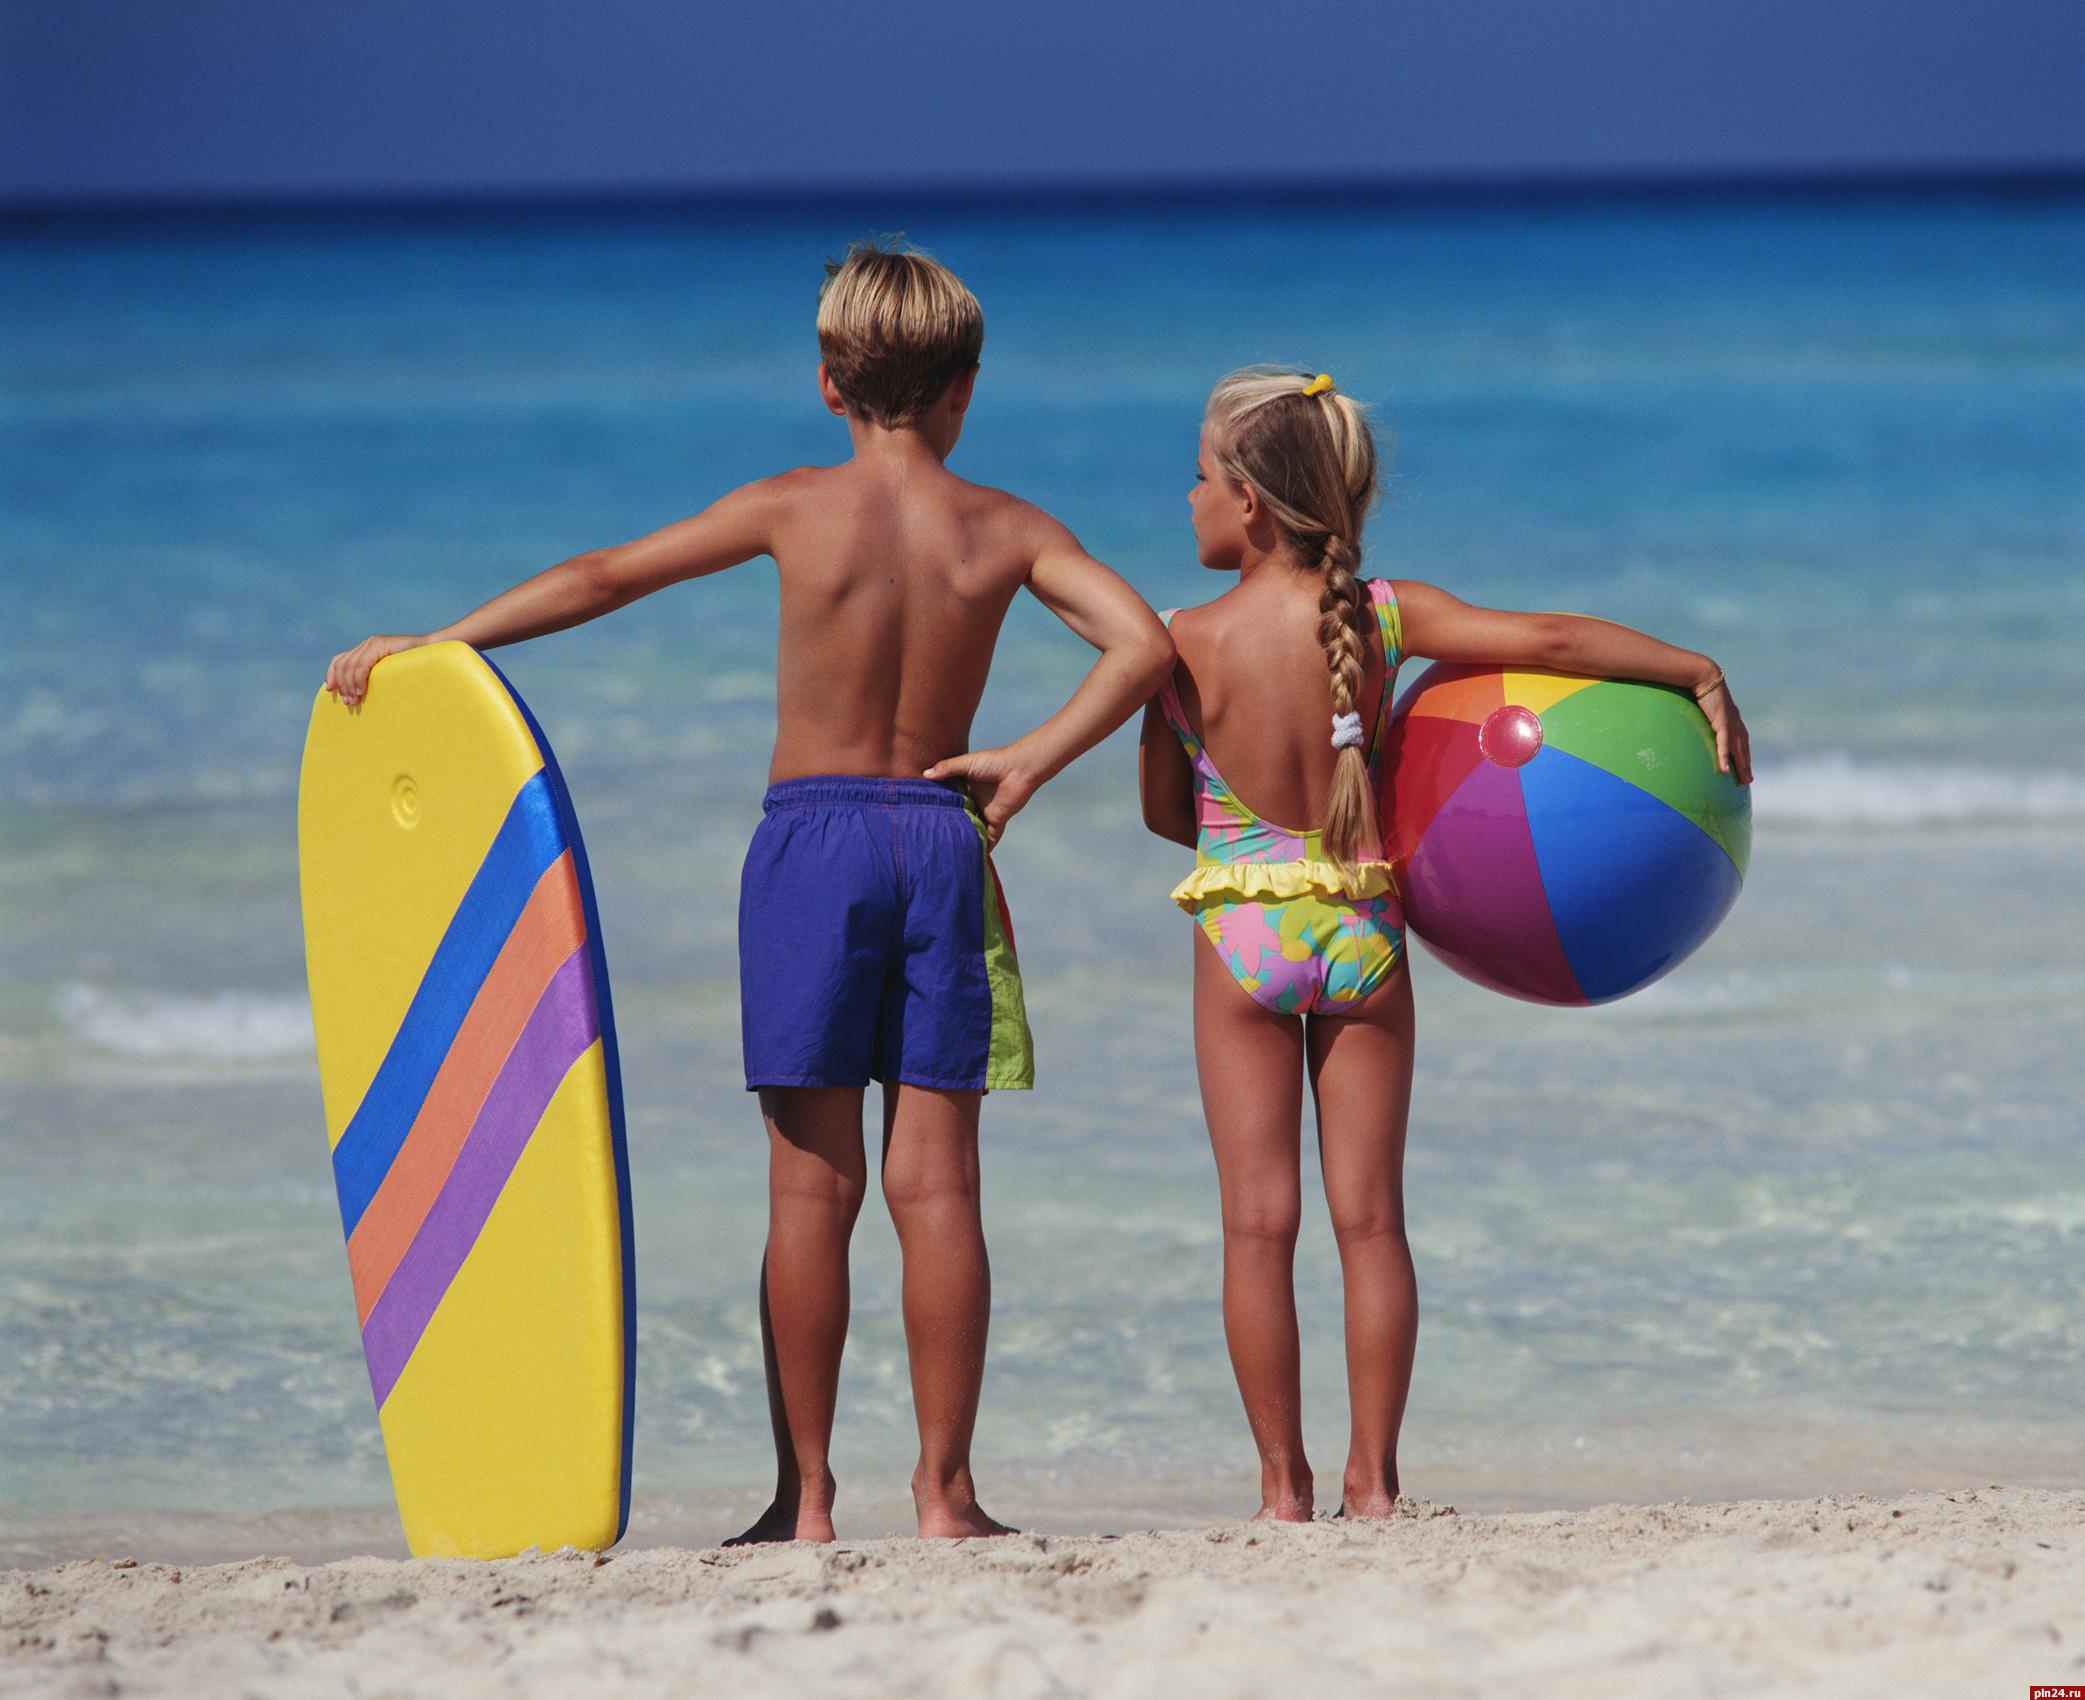 С детьми на пляж: как сделать отдых комфортным и безопасным